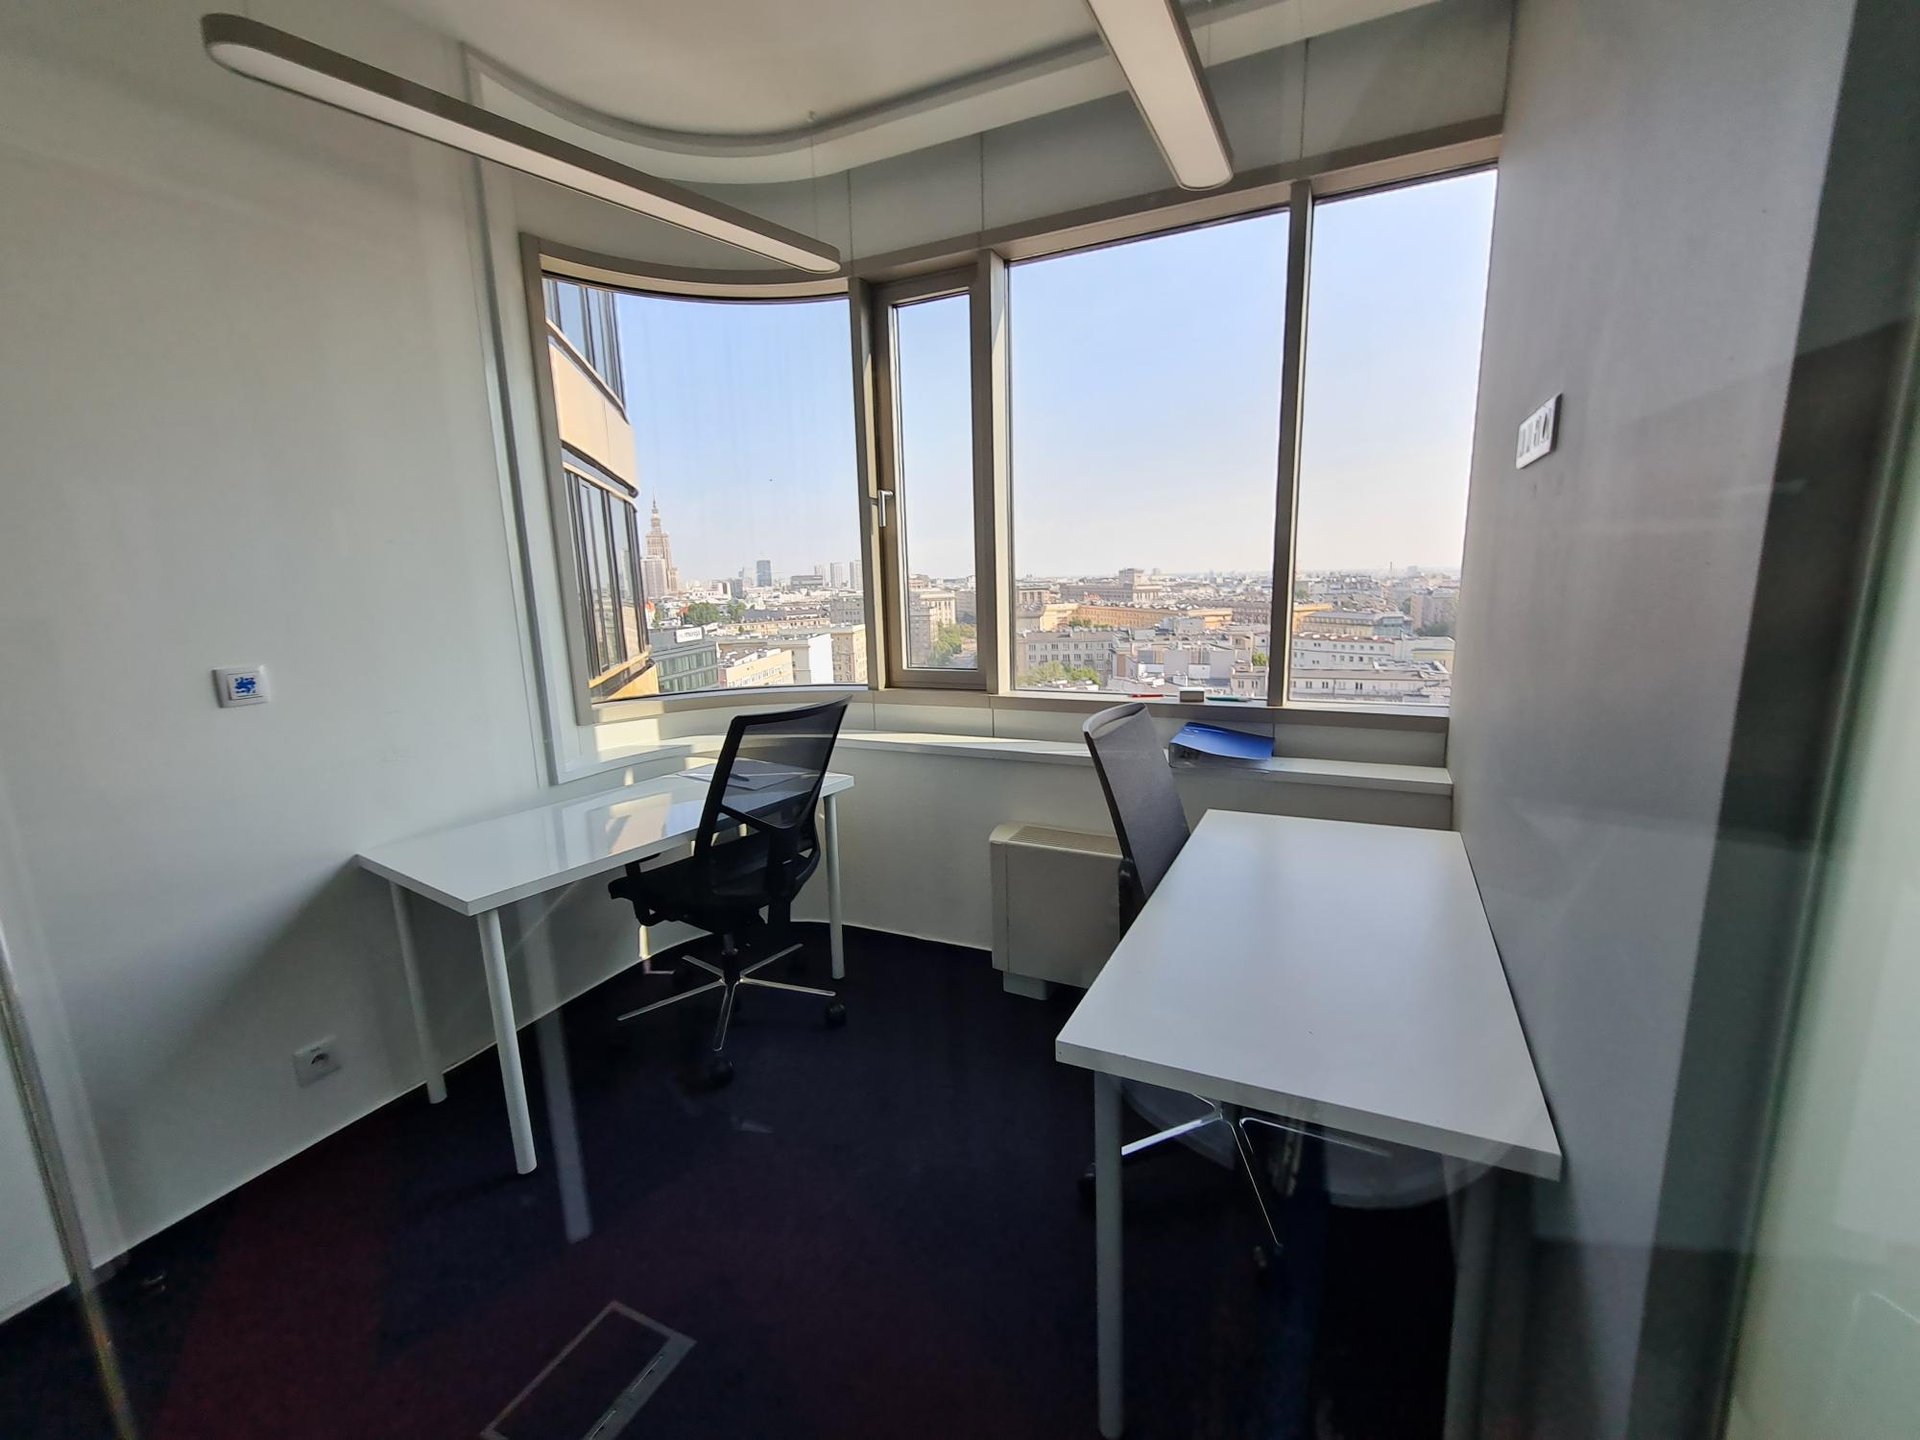 Biuro dla 2 os. w Zebra White beIN Offices powered by BiznesHub